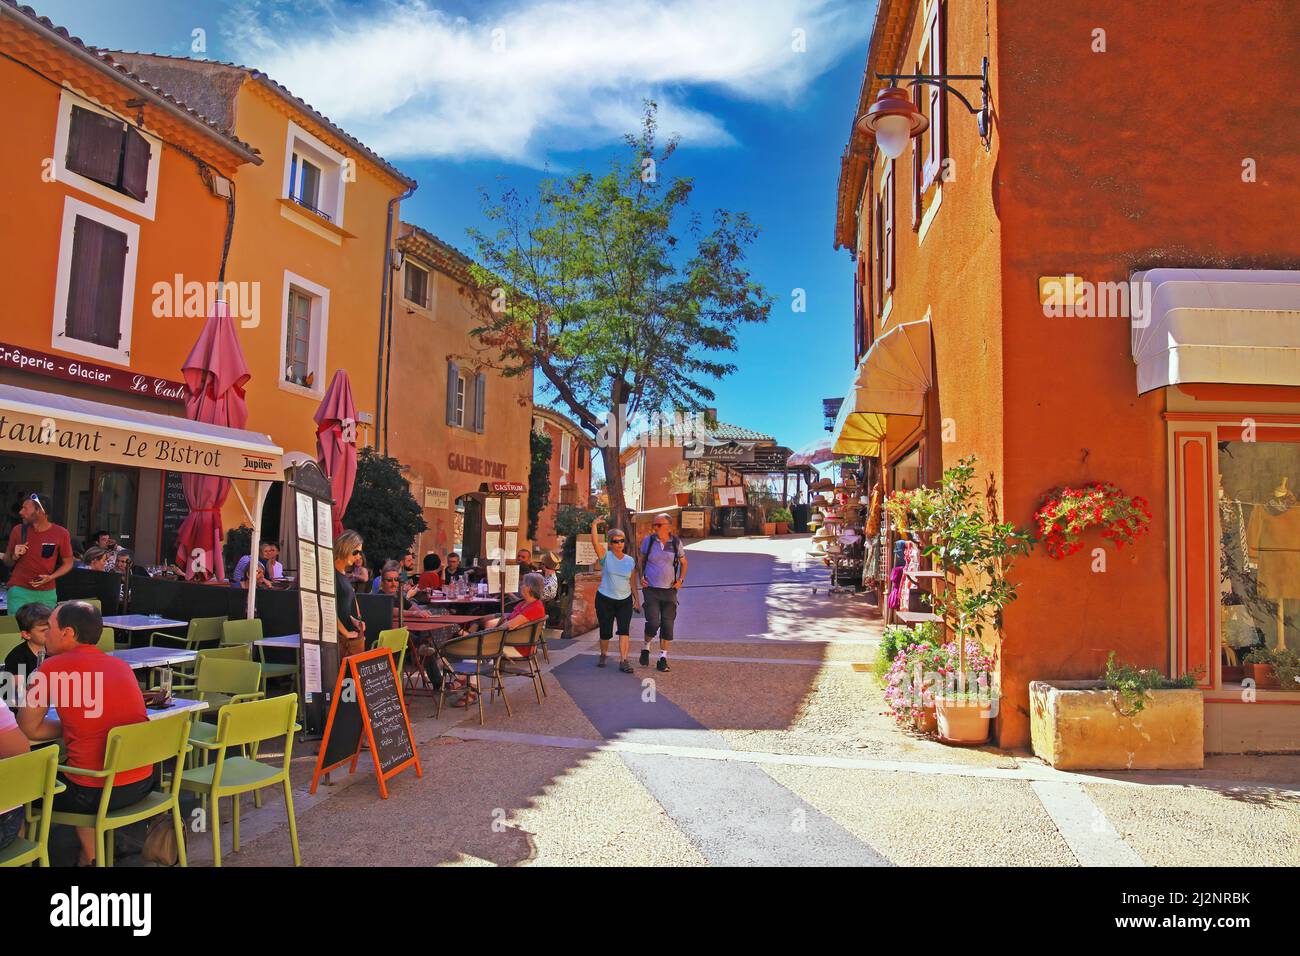 Roussillon, France - octobre 9. 2019: Vue sur la place avec des personnes assis à l'extérieur du café dans le vieux village médiéval coloré avec des maisons ocre Banque D'Images